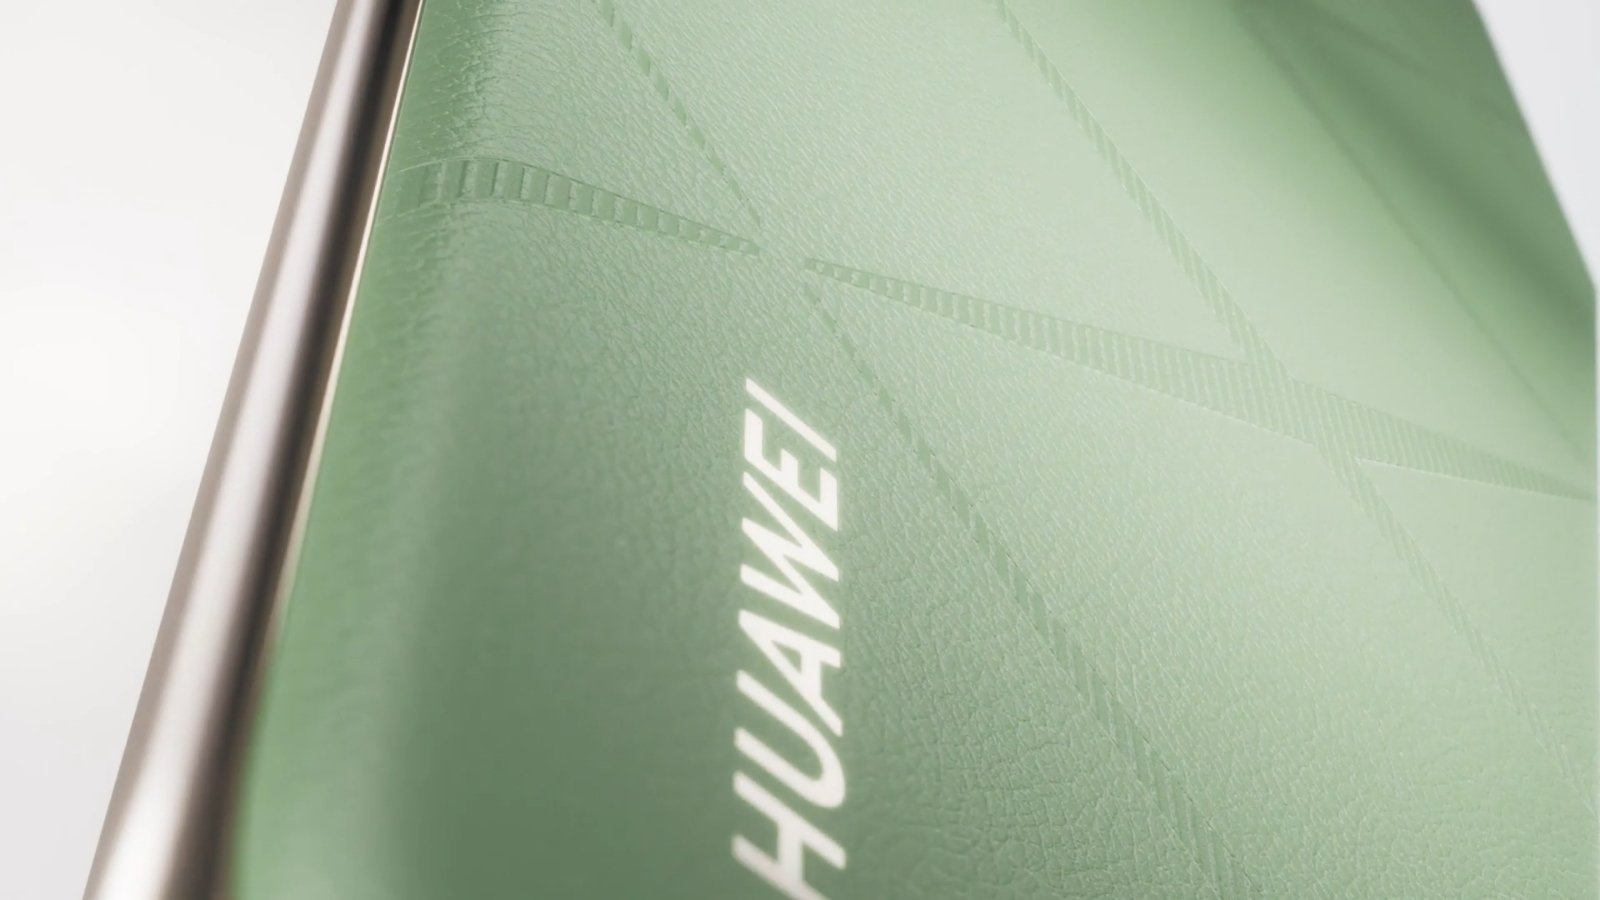 Resmiyet Kazandı: Huawei Pura 70 serisi tanıtıldı!